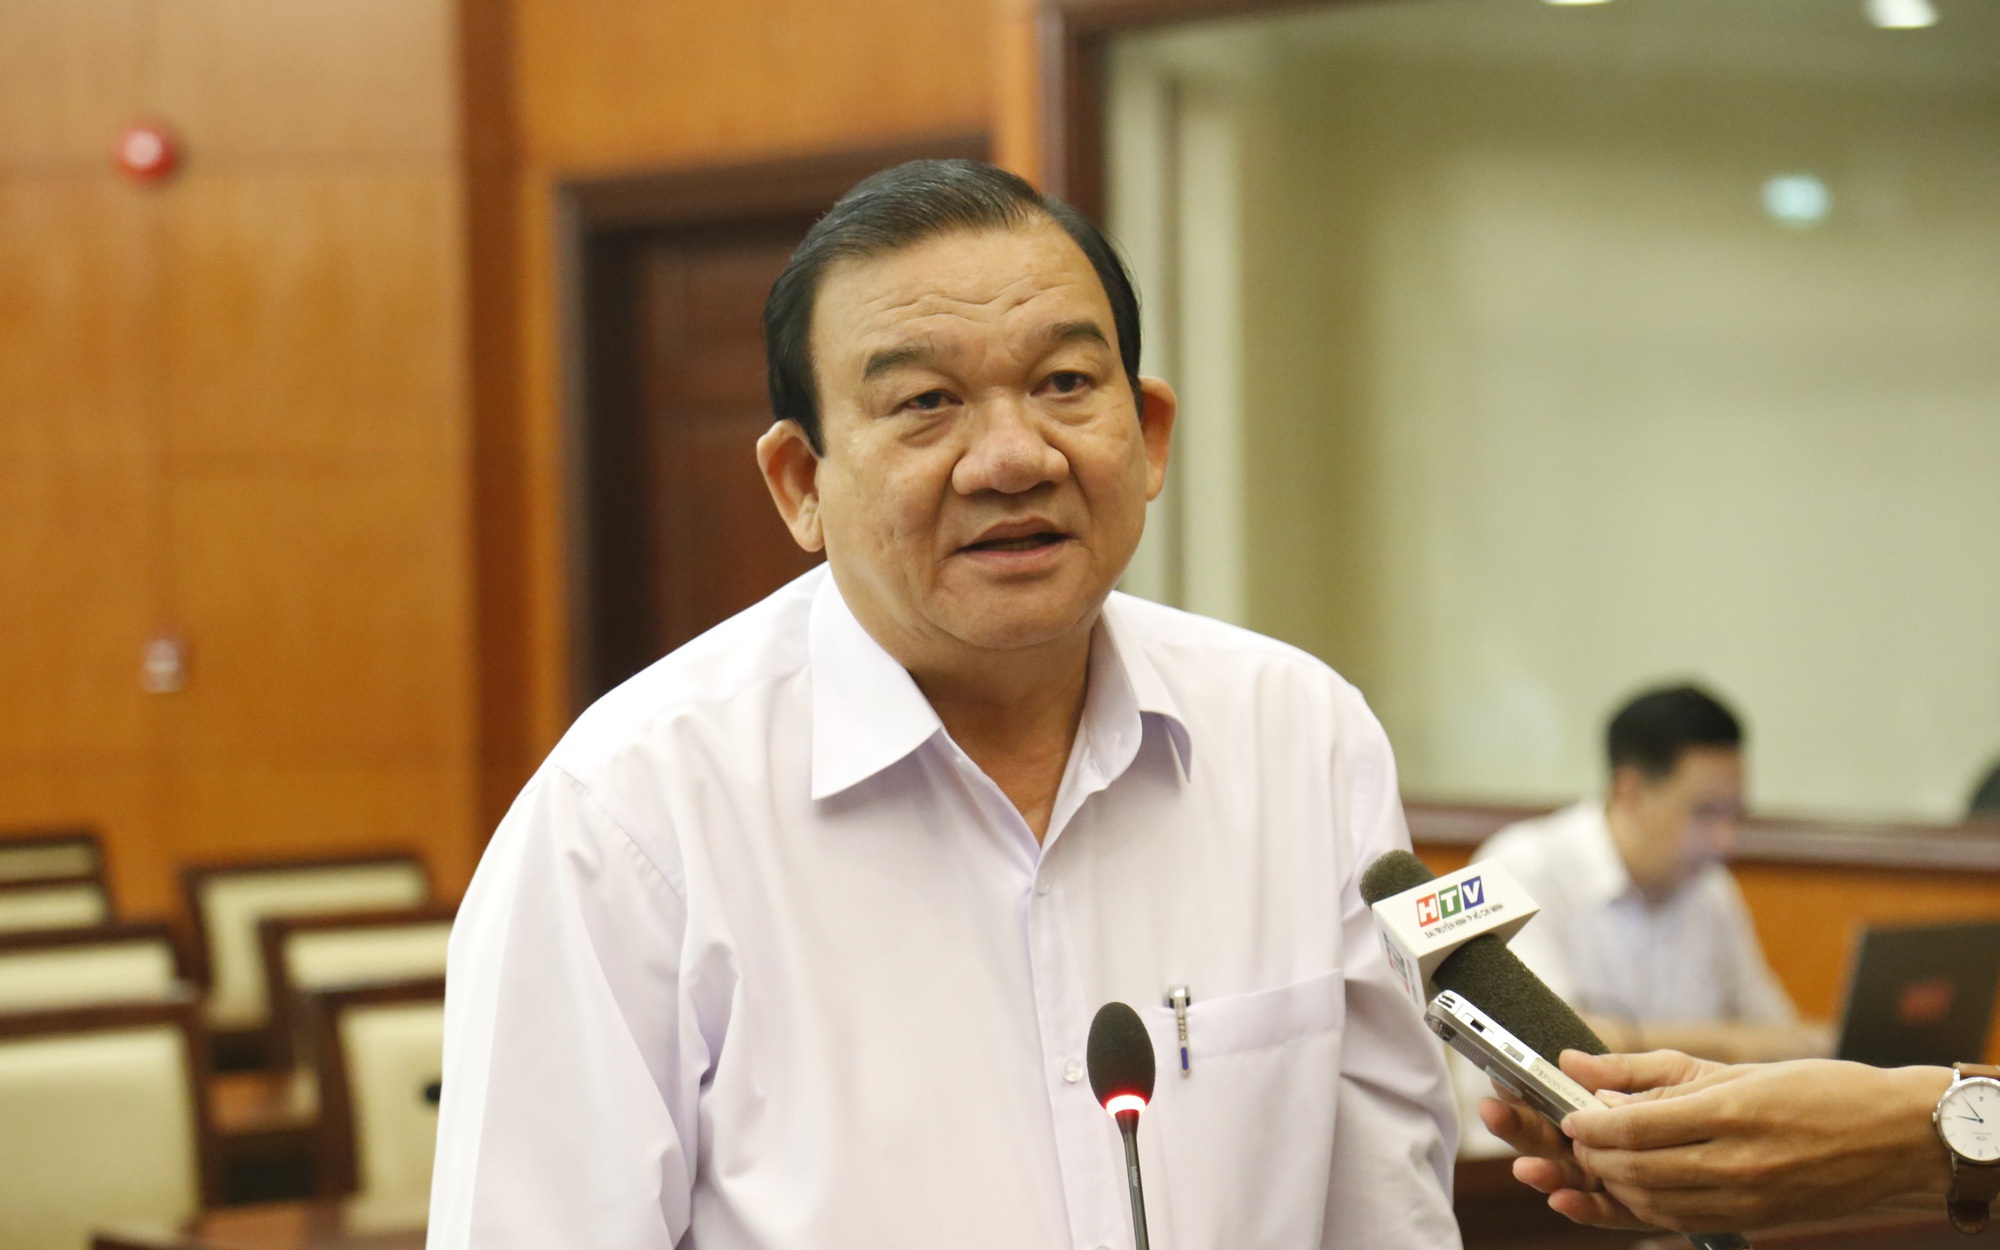 Giám đốc Sở LĐ-TB-XH TP.HCM Lê Minh Tấn nghỉ hưu trước tuổi